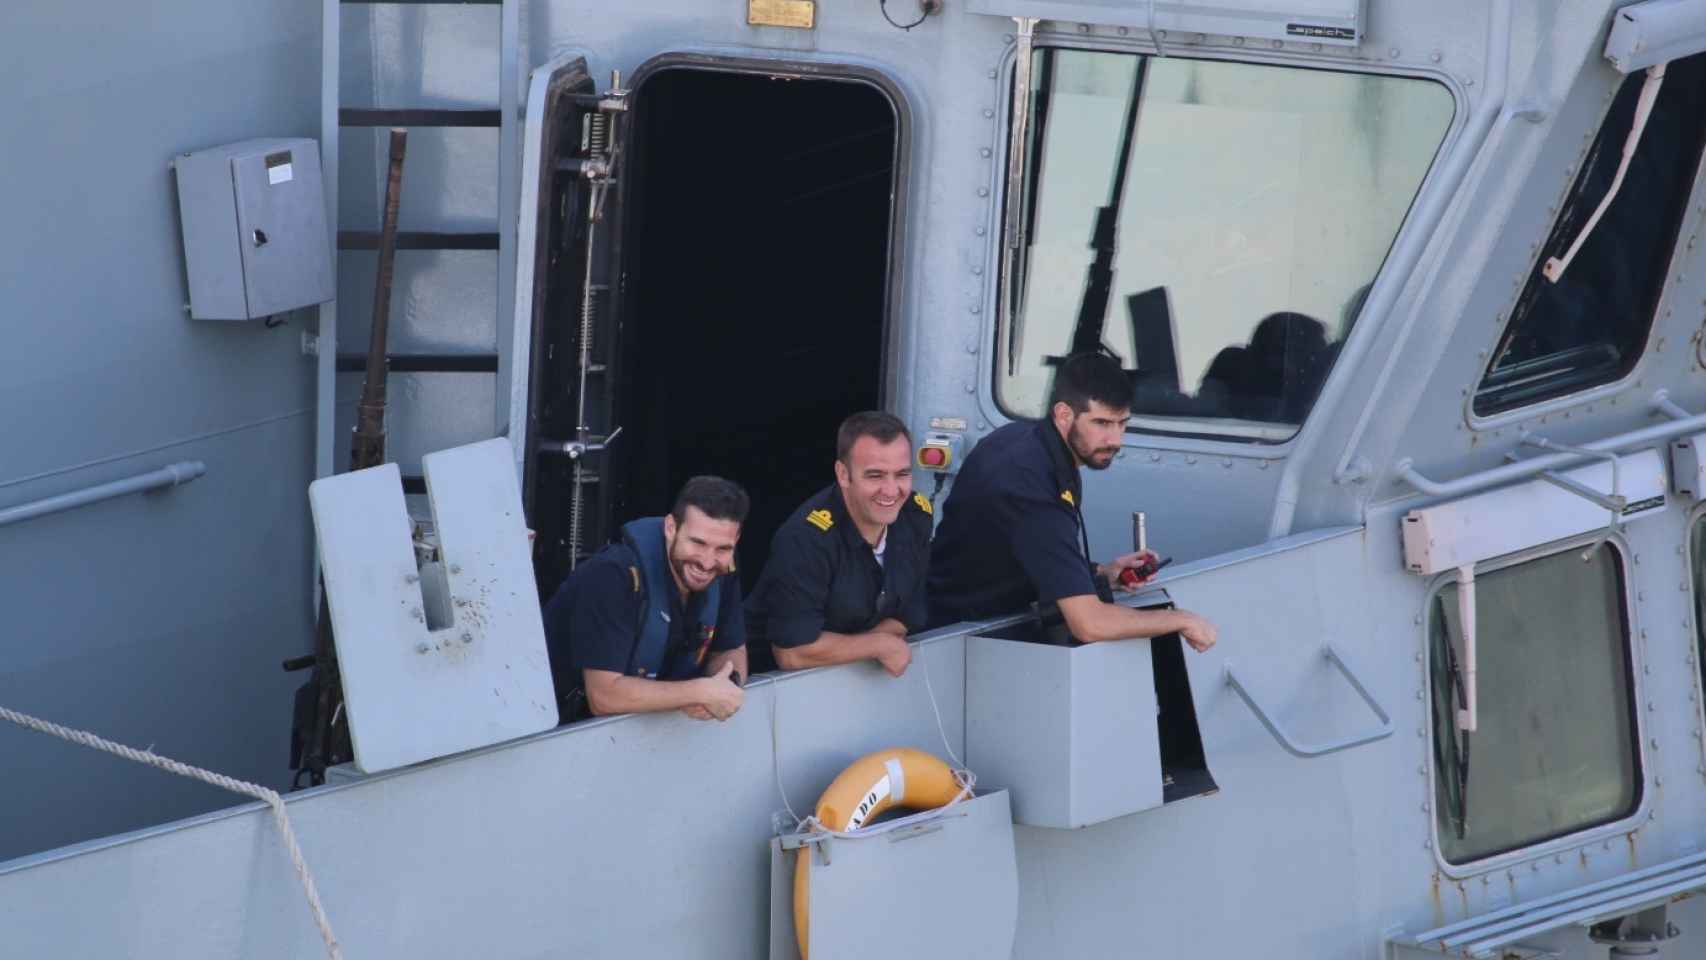 El comandante Moreno, en medio de la imagen, con dos de sus hombres a bordo del Tornado.